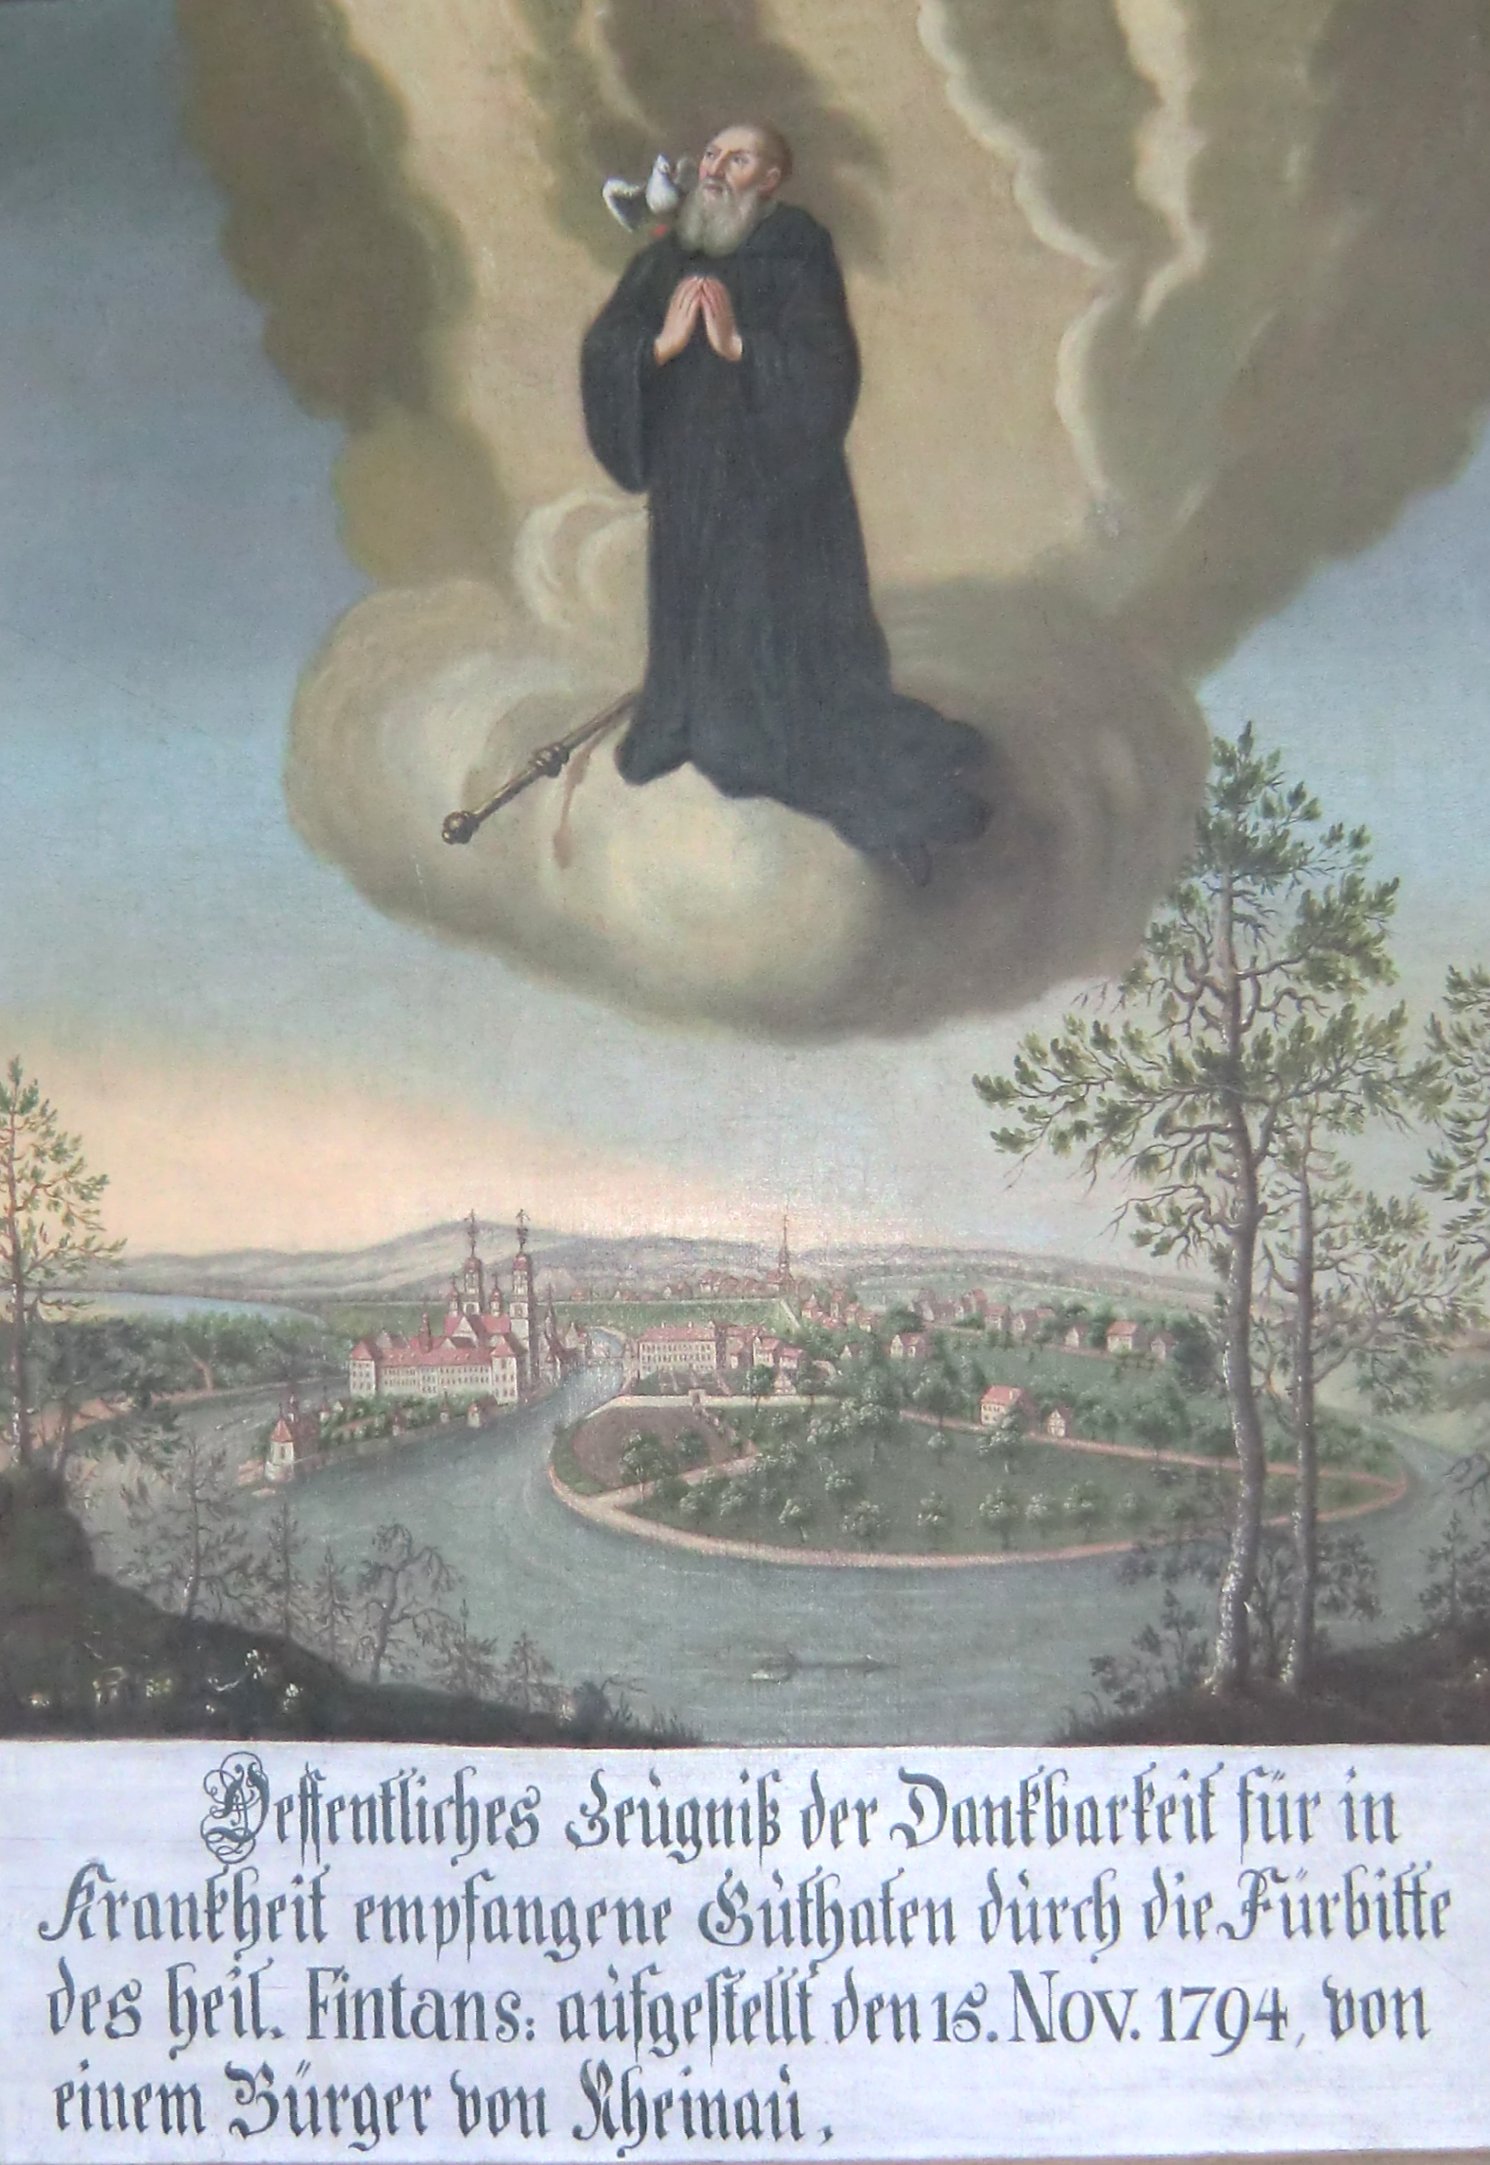 Votivgabe: Findanus mit Taube über dem Kloster, 1794, in der Klosterkirche Rheinau